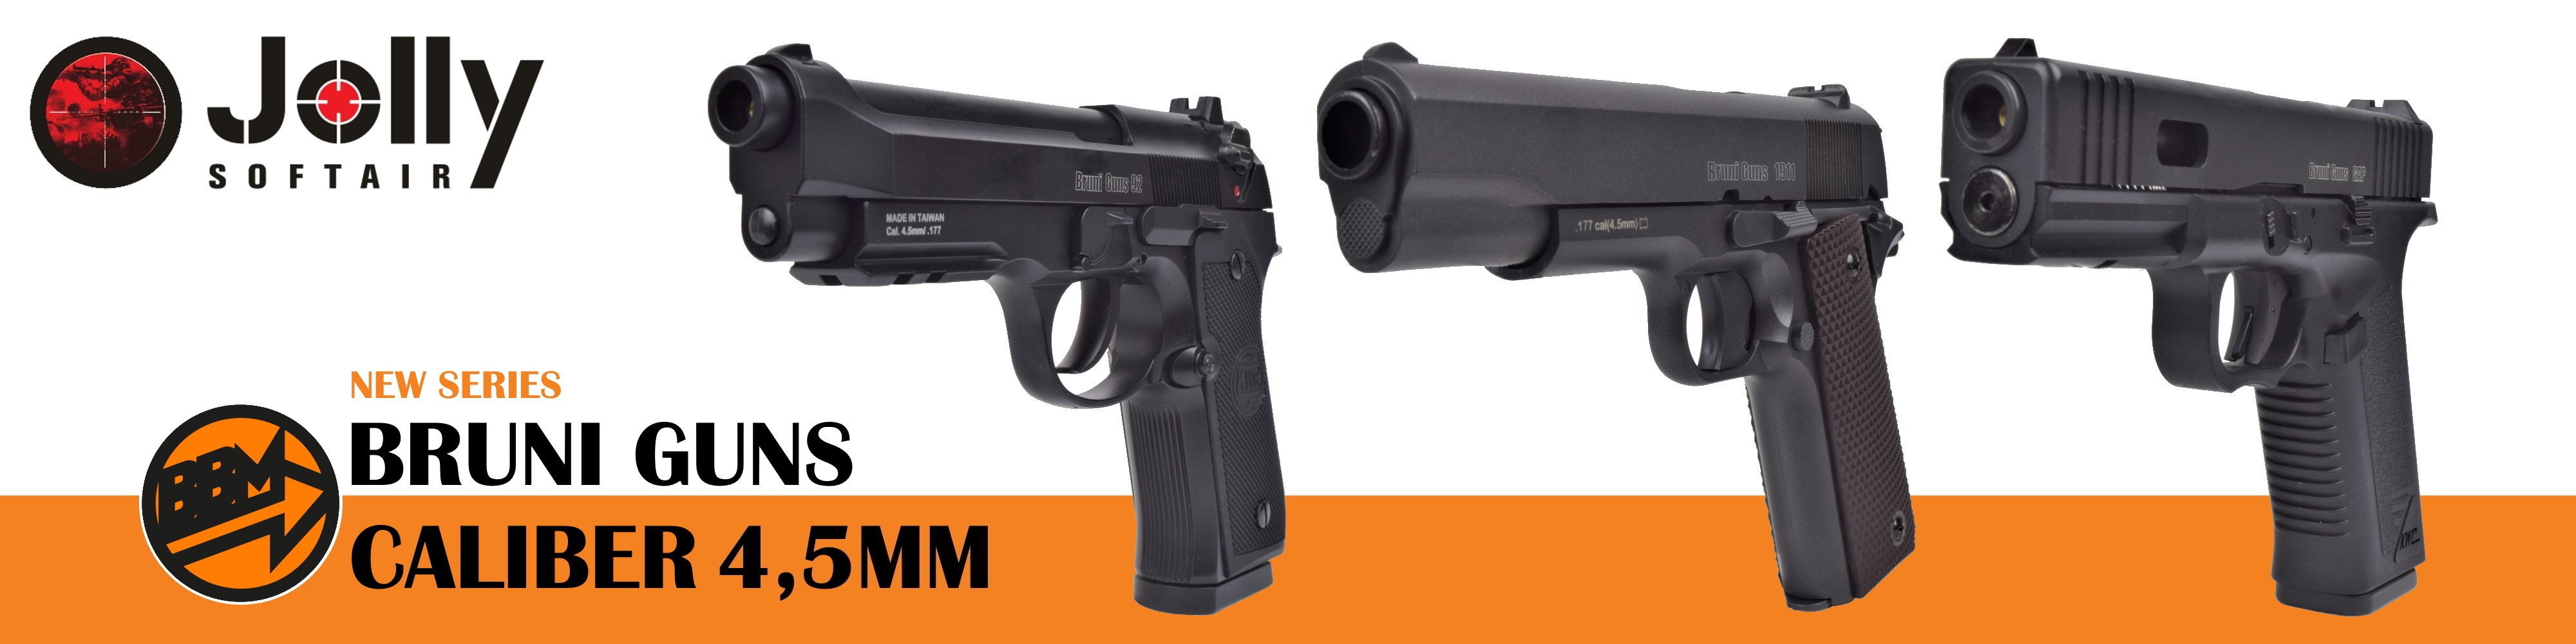 New calibro Bruni Guns 4,5mm CO2 pistols